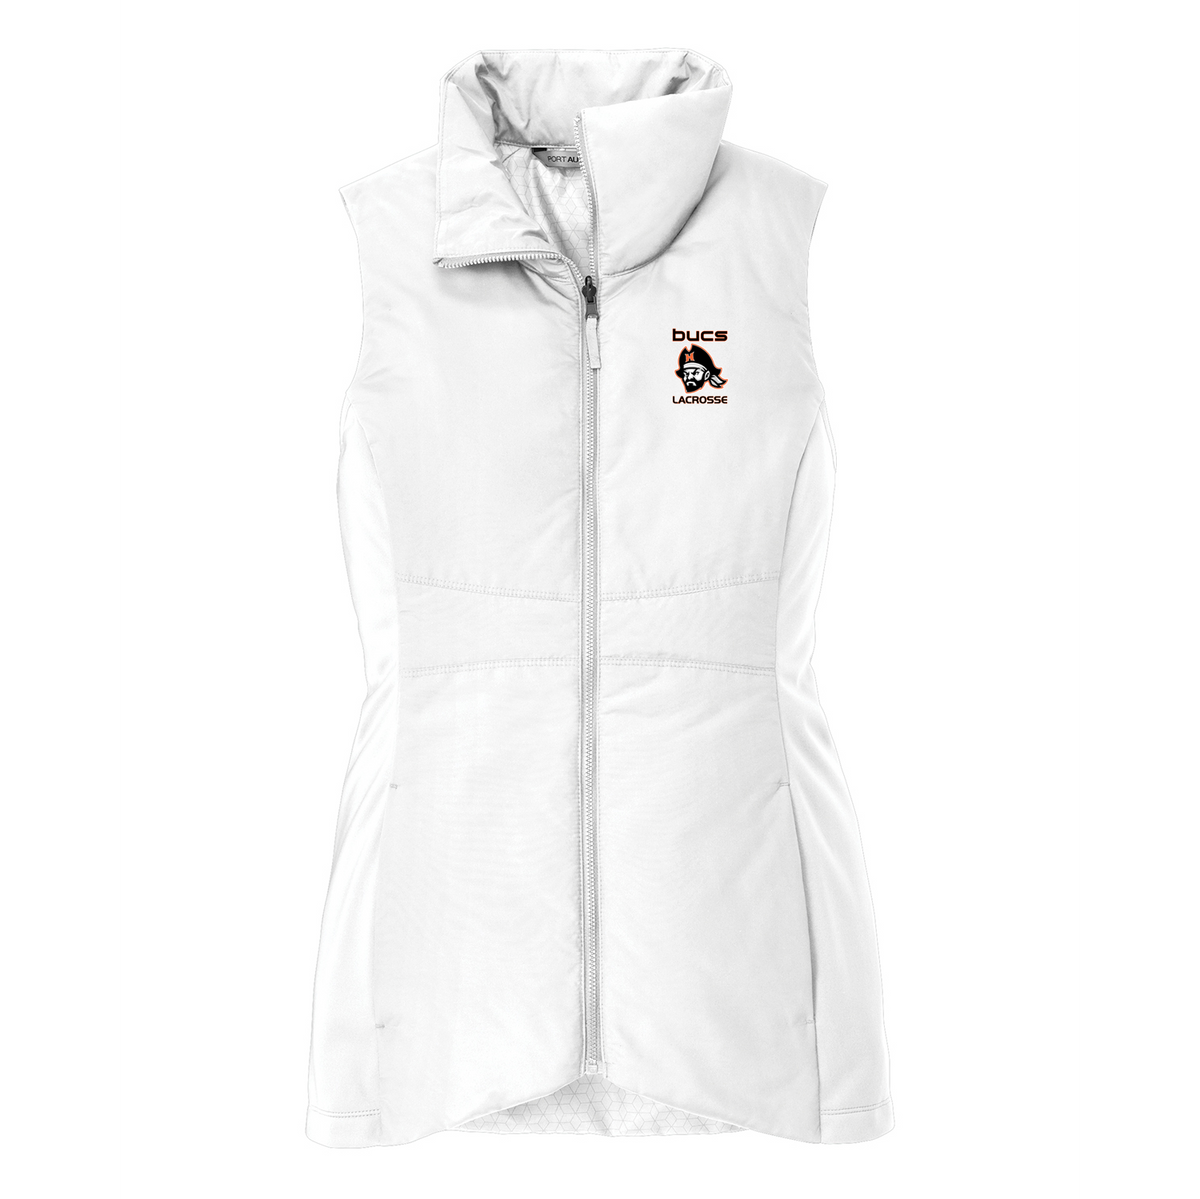 Bucs Lacrosse Women's Vest